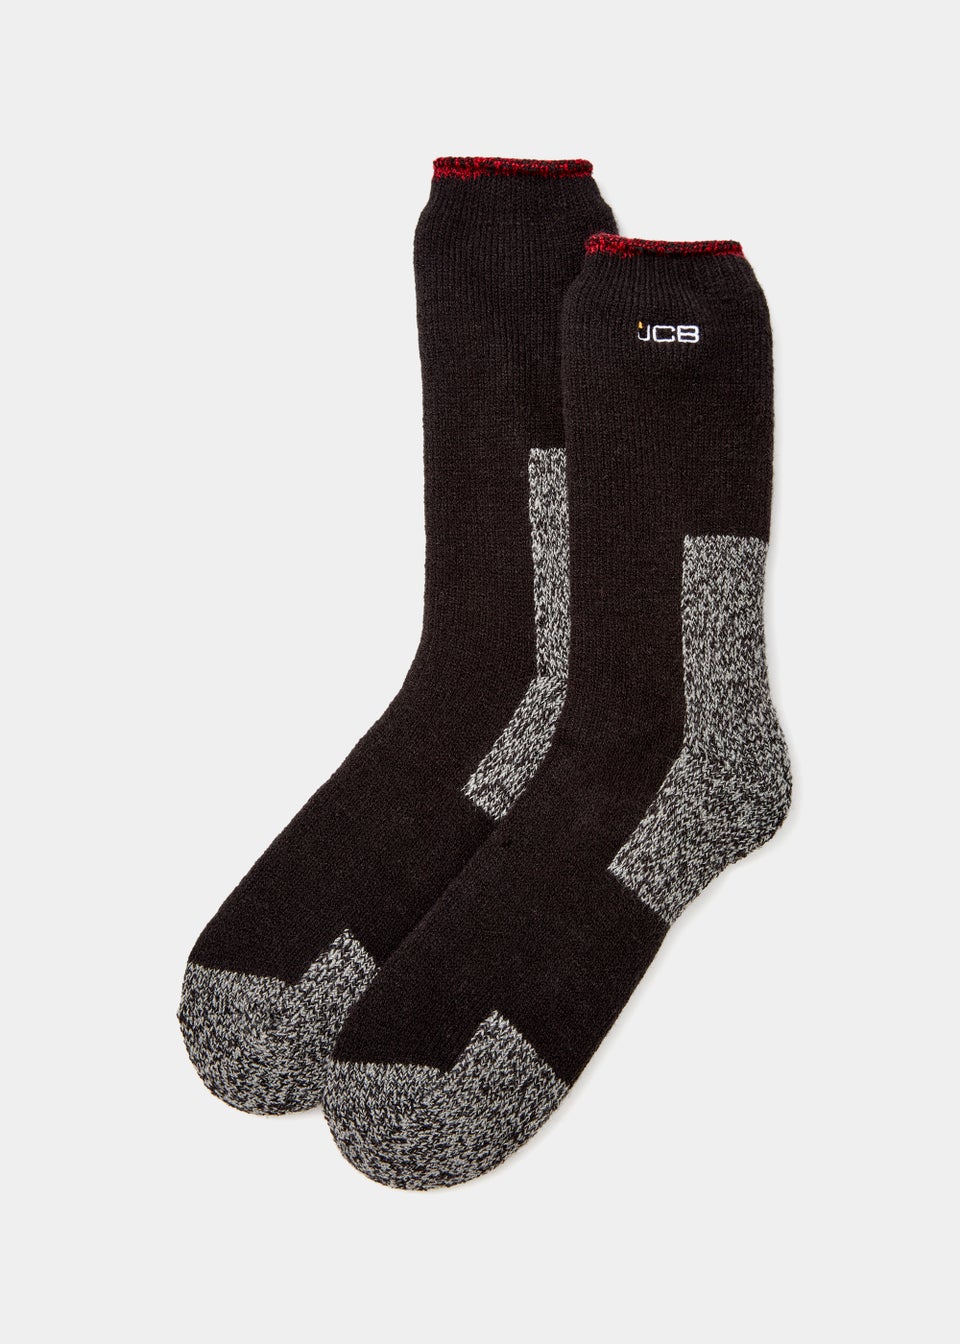 JCB Black Thermal Socks